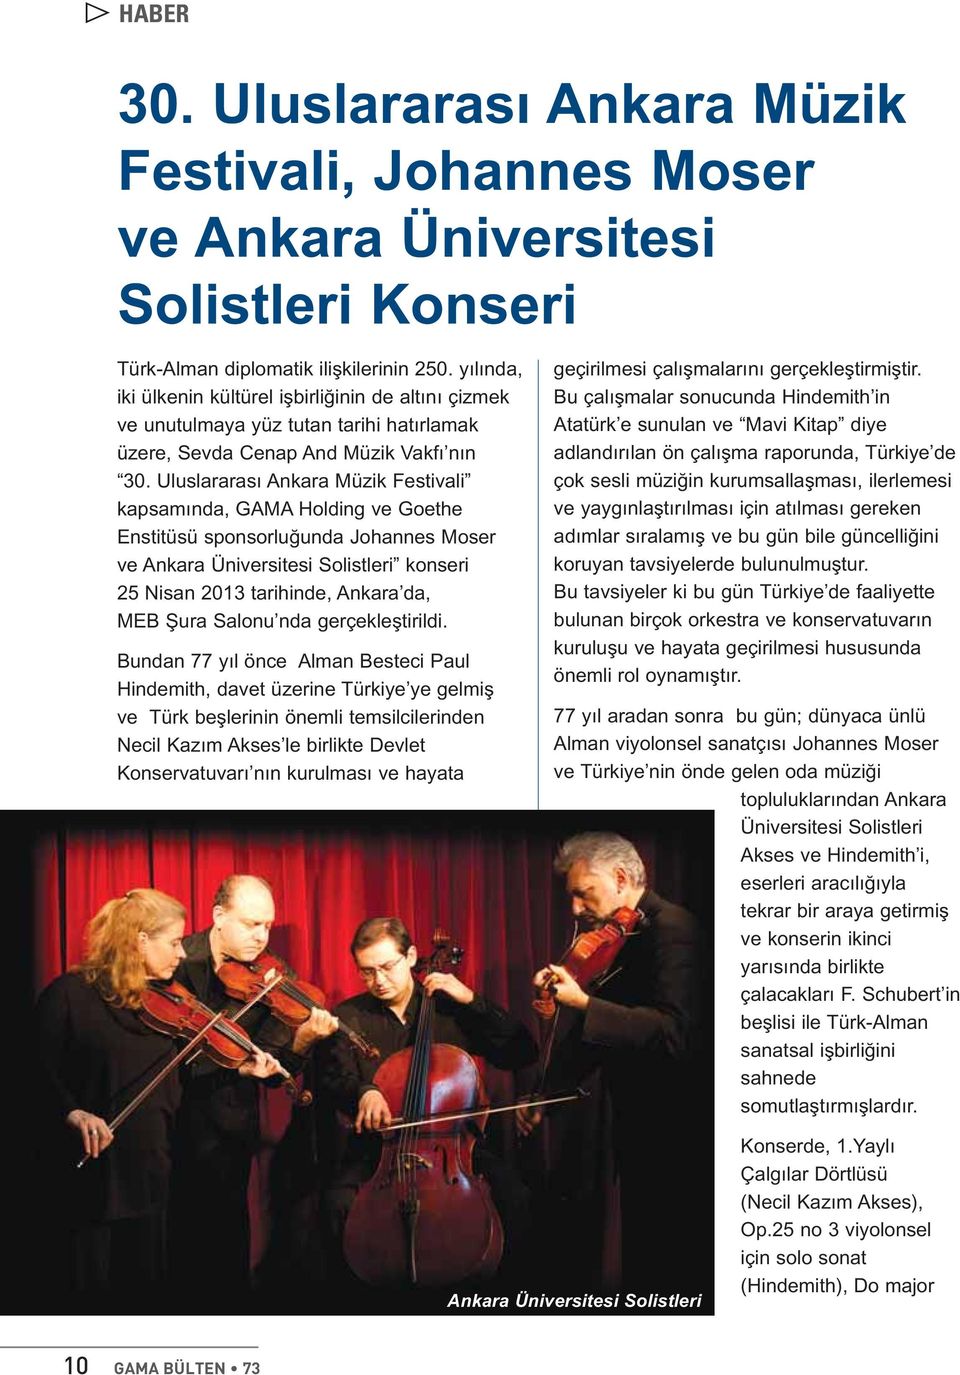 Uluslararası Ankara Müzik Festivali kapsamında, GAMA Holding ve Goethe Enstitüsü sponsorluğunda Johannes Moser ve Ankara Üniversitesi Solistleri konseri 25 Nisan 2013 tarihinde, Ankara da, MEB Şura